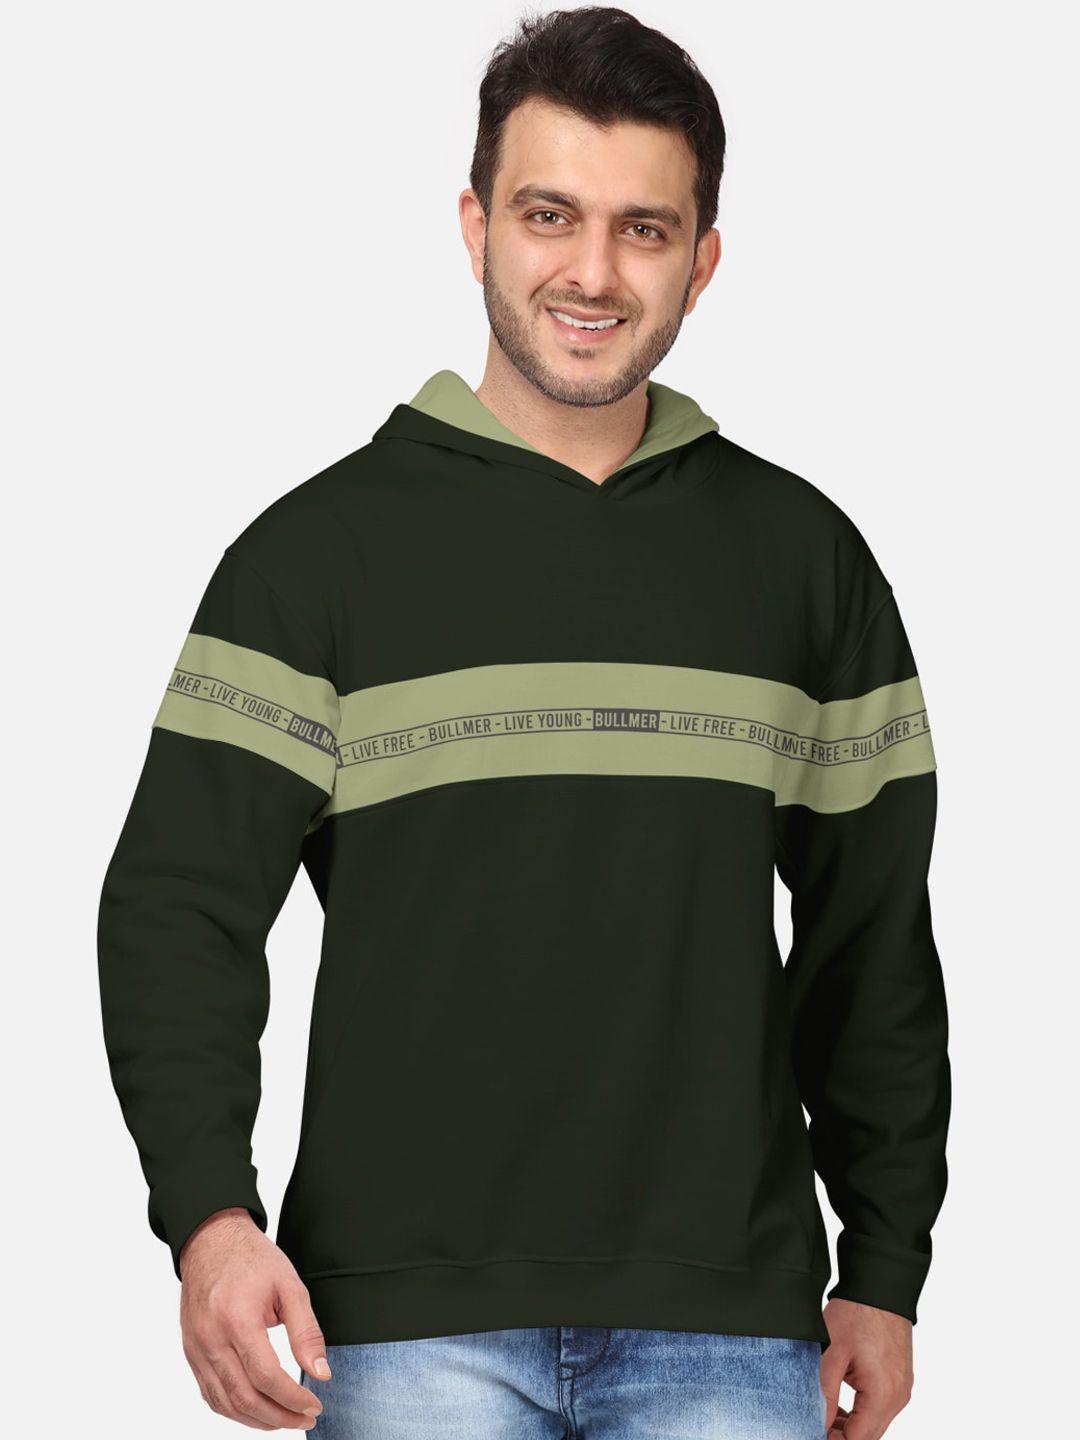 bullmer men olive green printed hooded sweatshirt